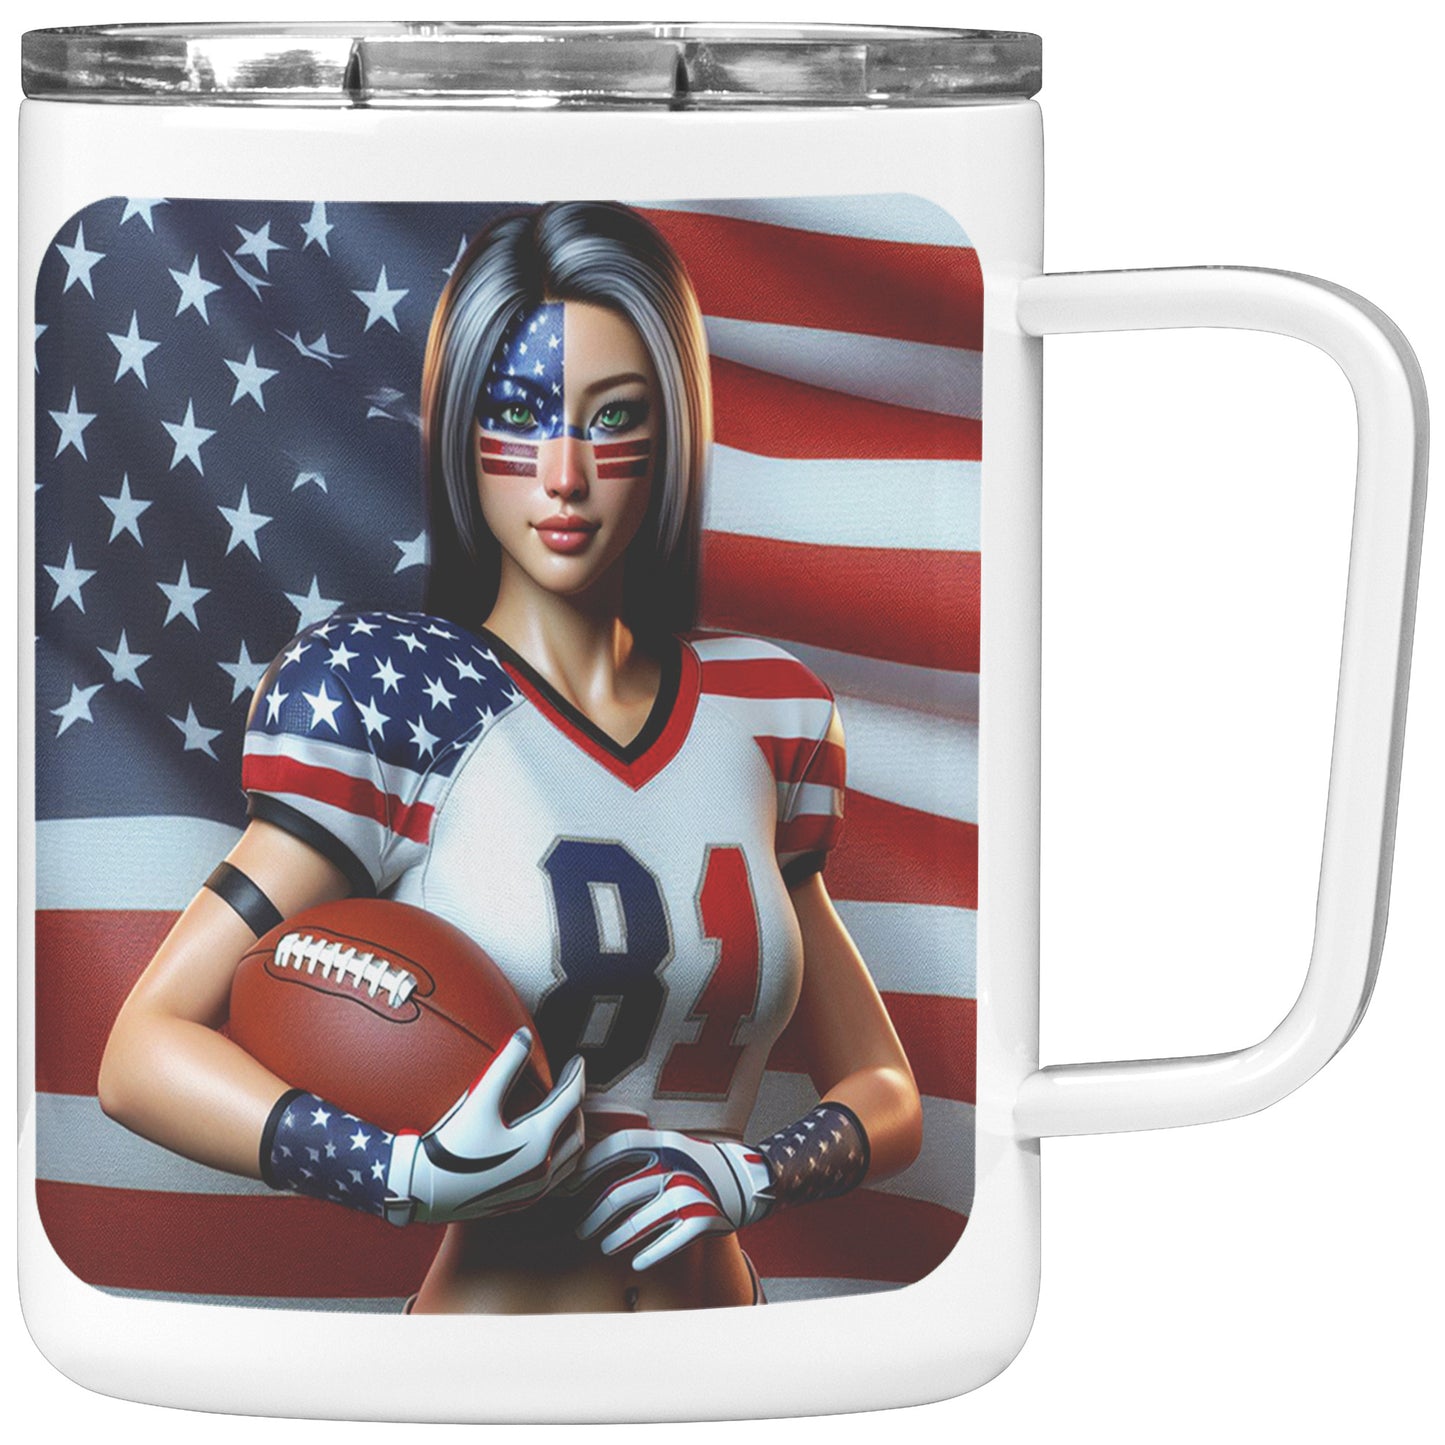 Woman Football Player - Insulated Coffee Mug #18